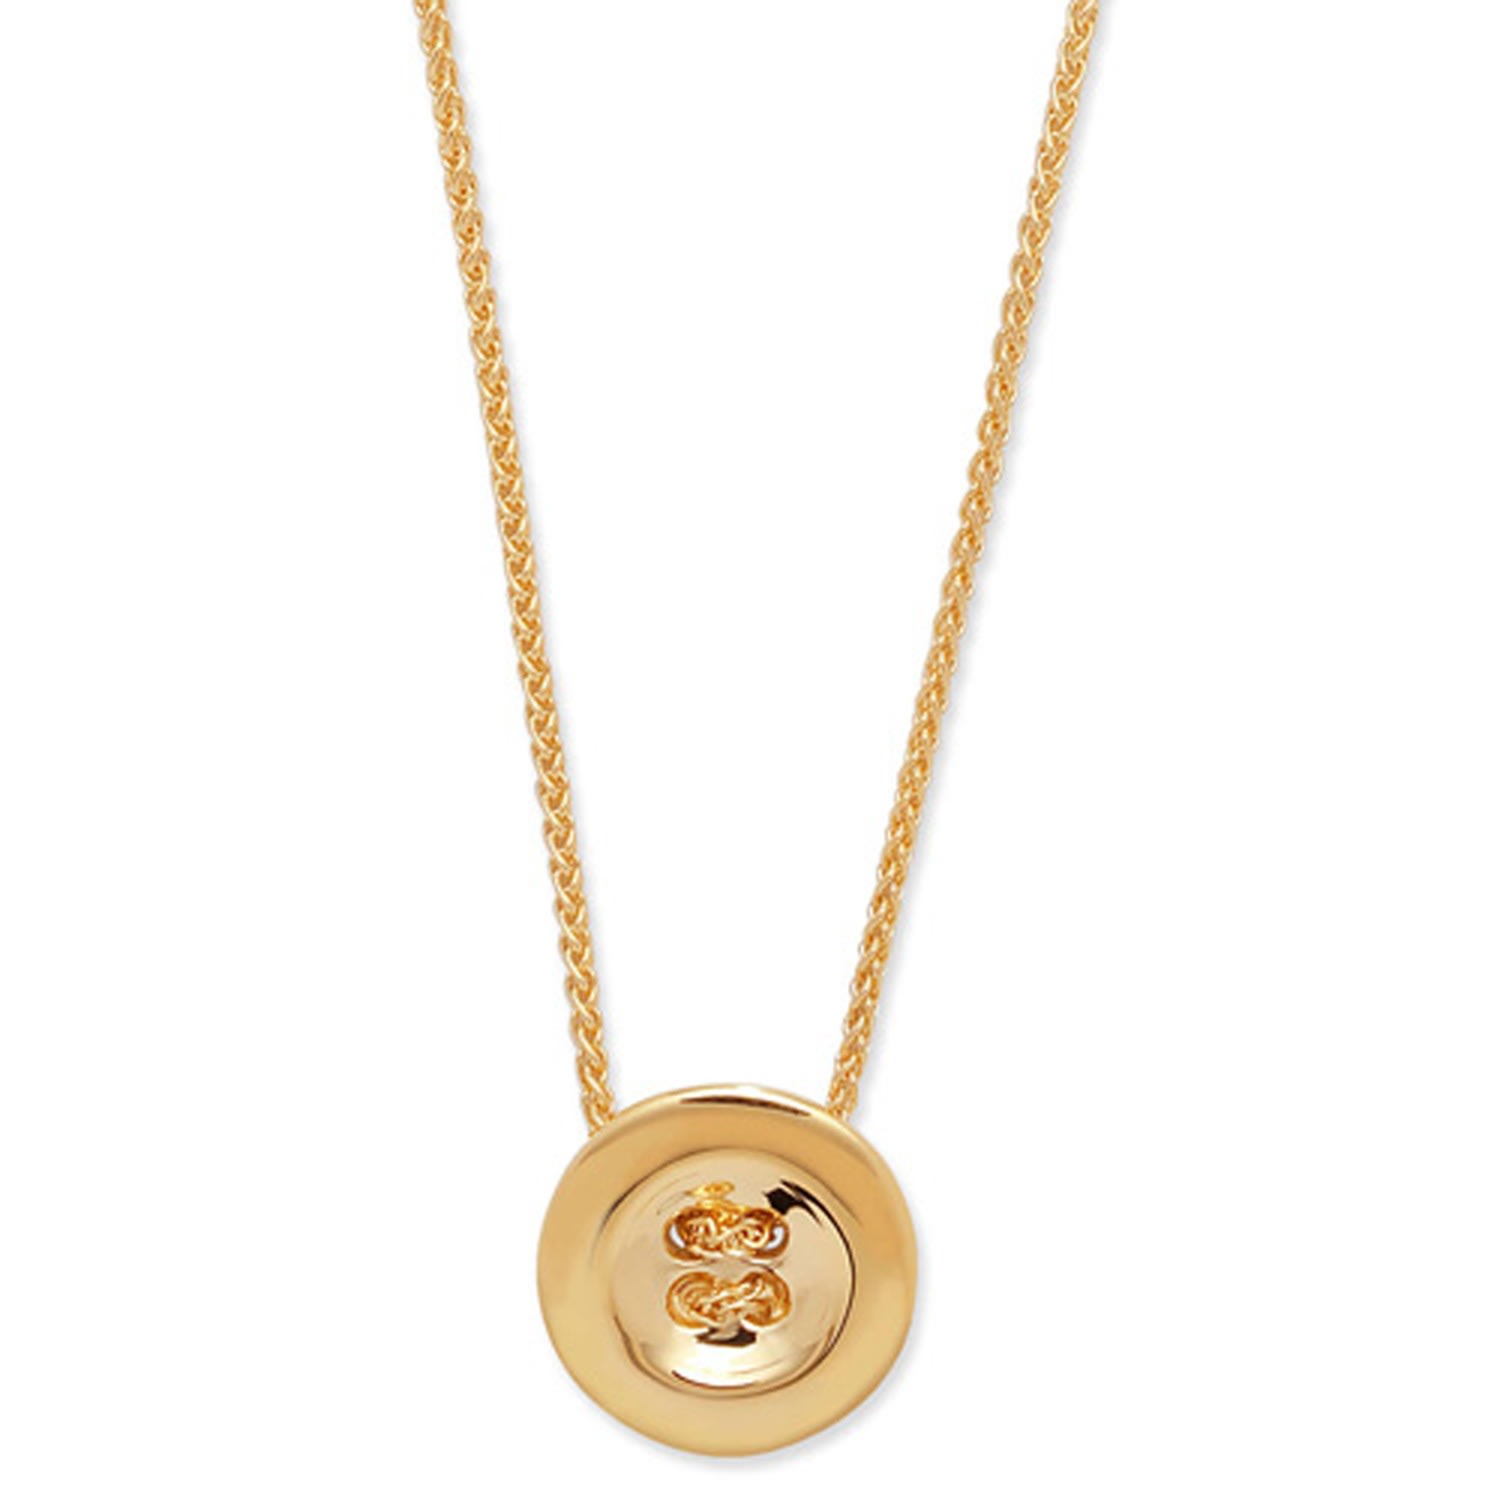 Lucy Quartermaine Women's Gold Vermeil Button Pendant